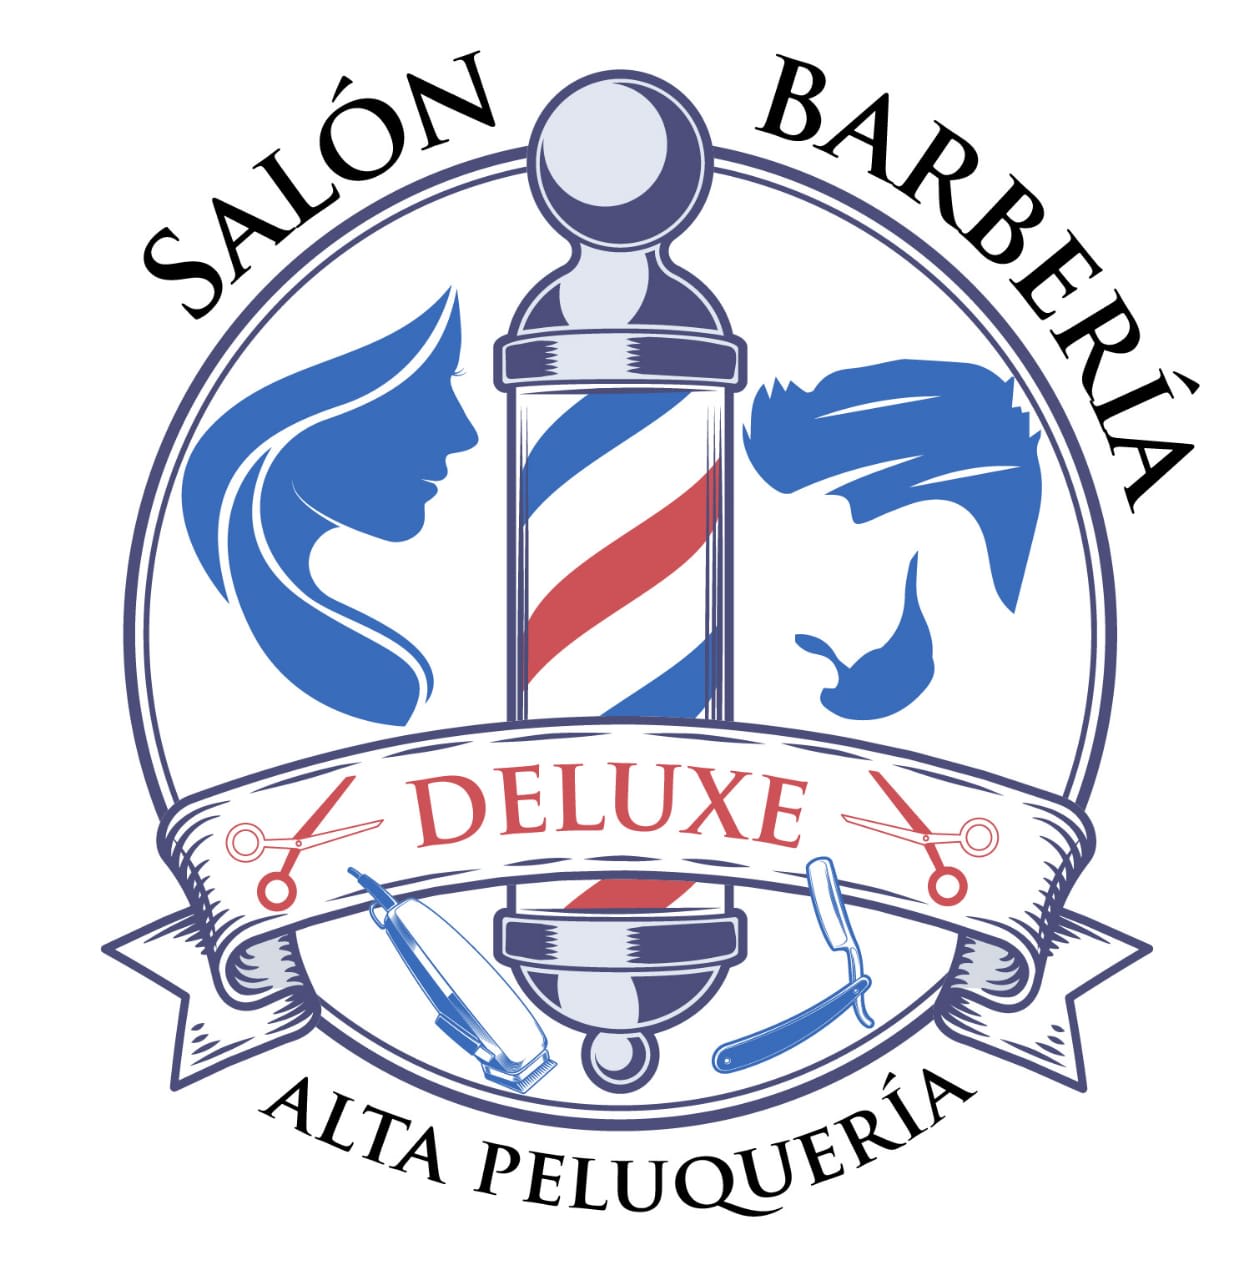 Salón, Barbería Y Alta Peluquería Deluxe